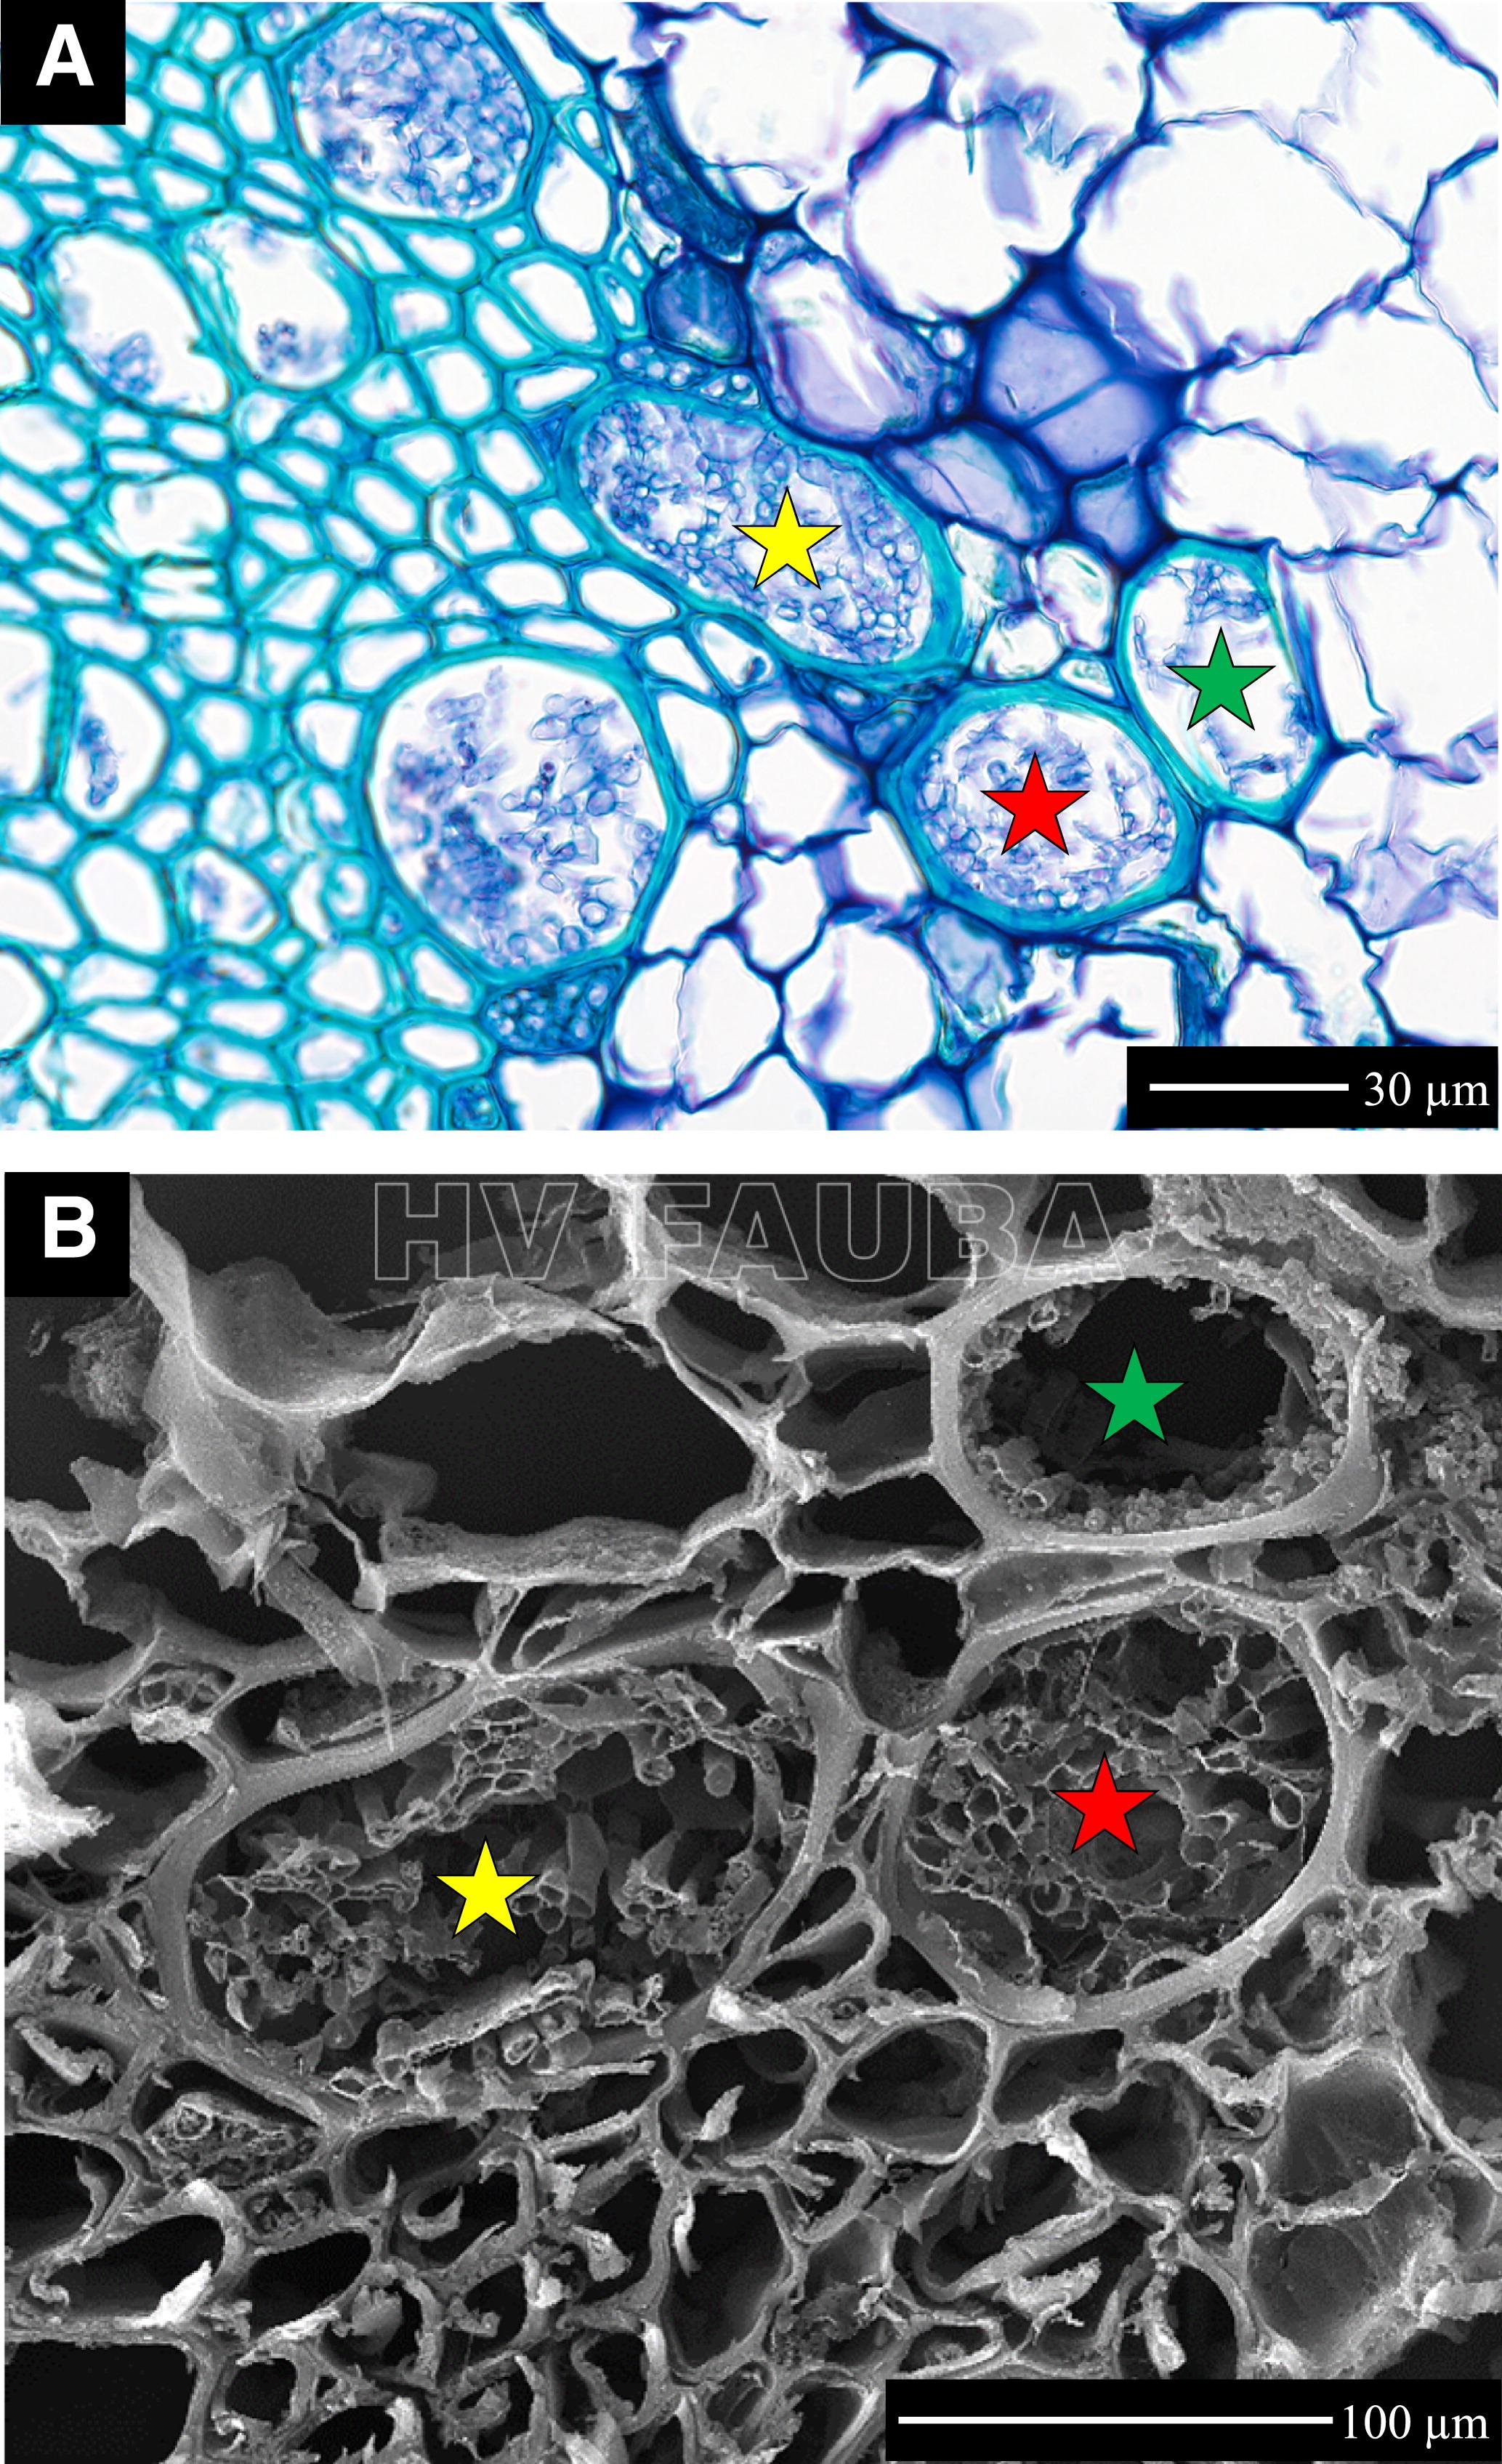 Fusarium oxysporum f. sp. lycopersici en tallo de una variedad de tomate susceptible que muestra hifas en los vasos del xilema. A, microscopía óptica en una sección transversal de 60× de tallo de tomate teñido con azul de toluidina. B, Misma región que en A pero con microscopía electrónica de barrido (SEM) a 2182 aumentos. Las estrellas indican los vasos del xilema correspondientes en A y B. Barra de escala = 30 µm en A y 100 µm en B. Autor: Caldwell y Iyer-Pascuzzi, 2019.